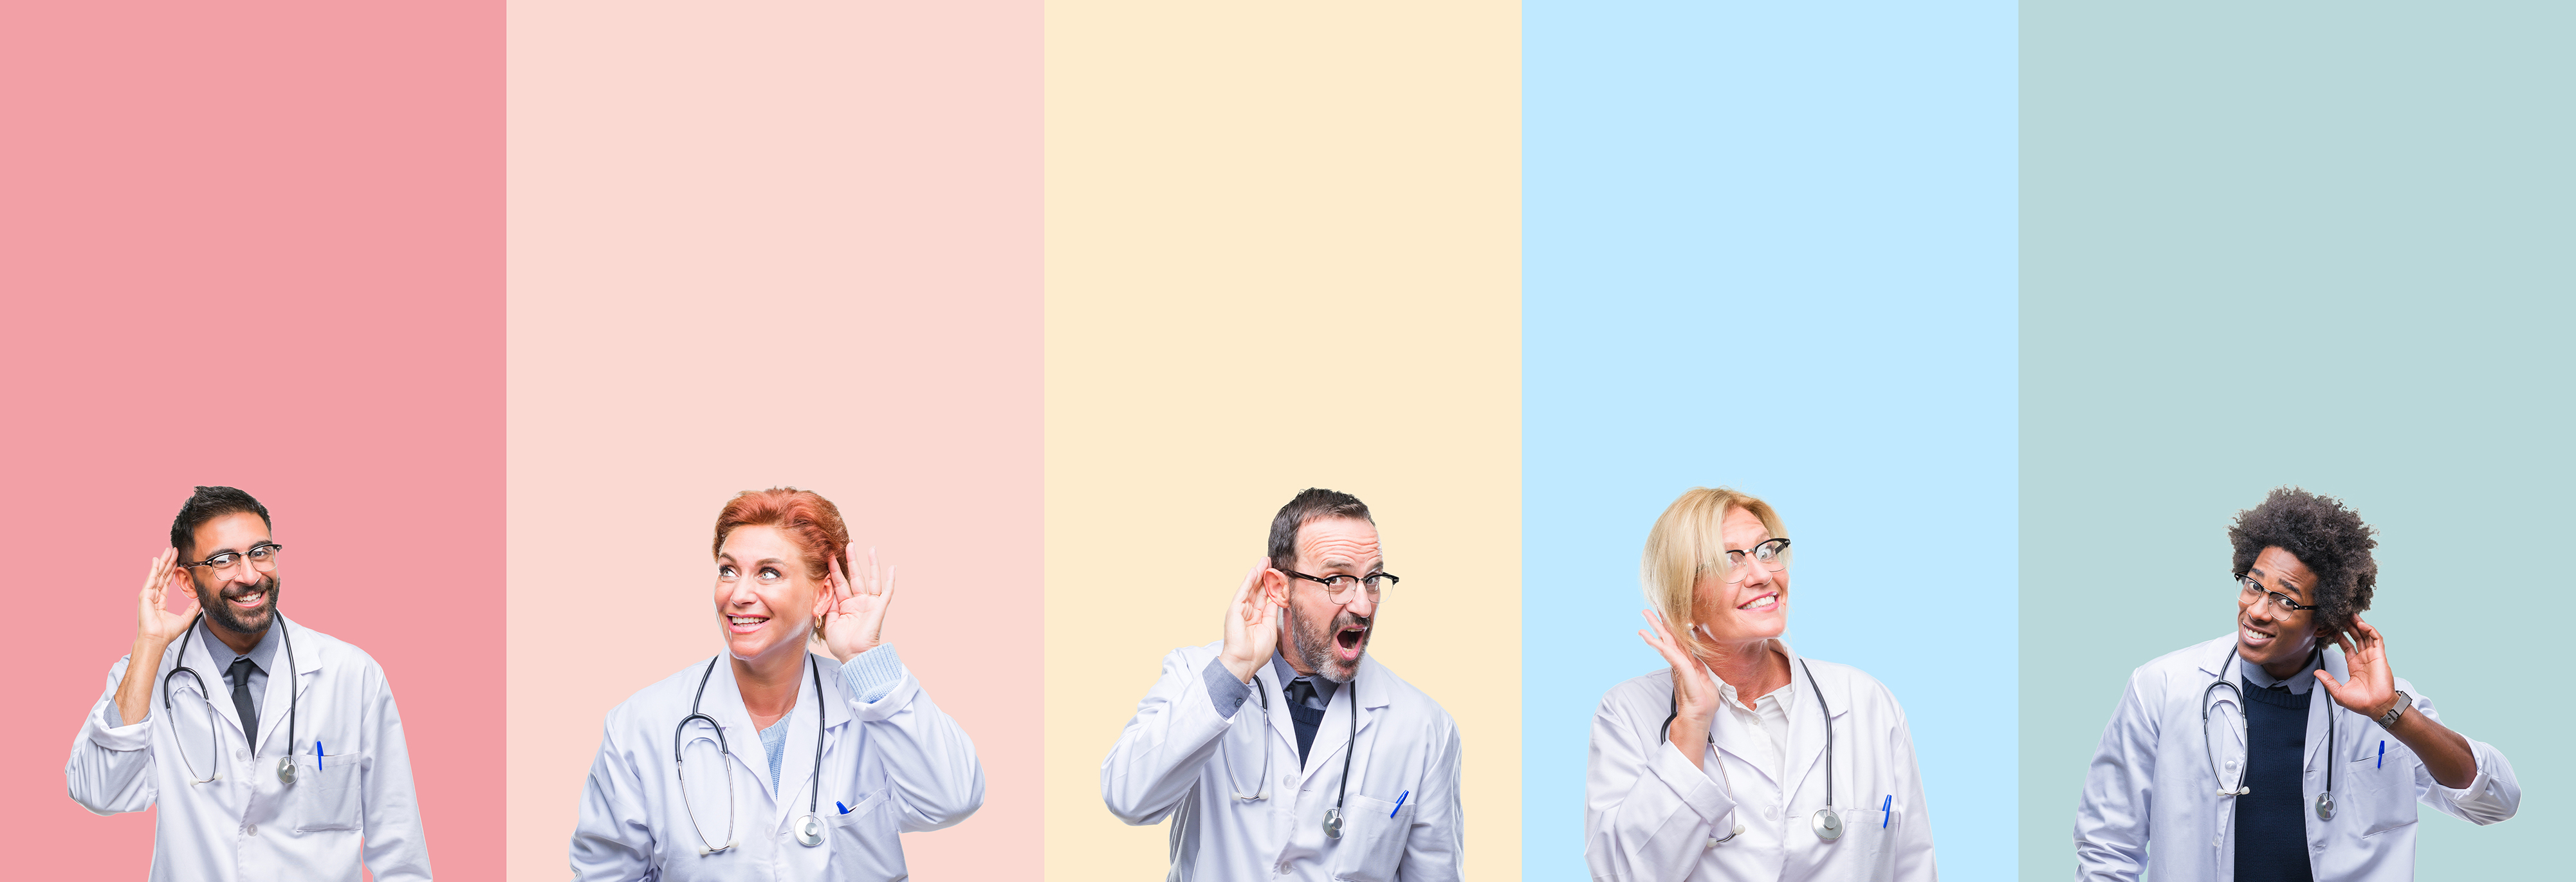 5 Ärzte stehen jeweils vor einem andersfarbigen Hintergrund.